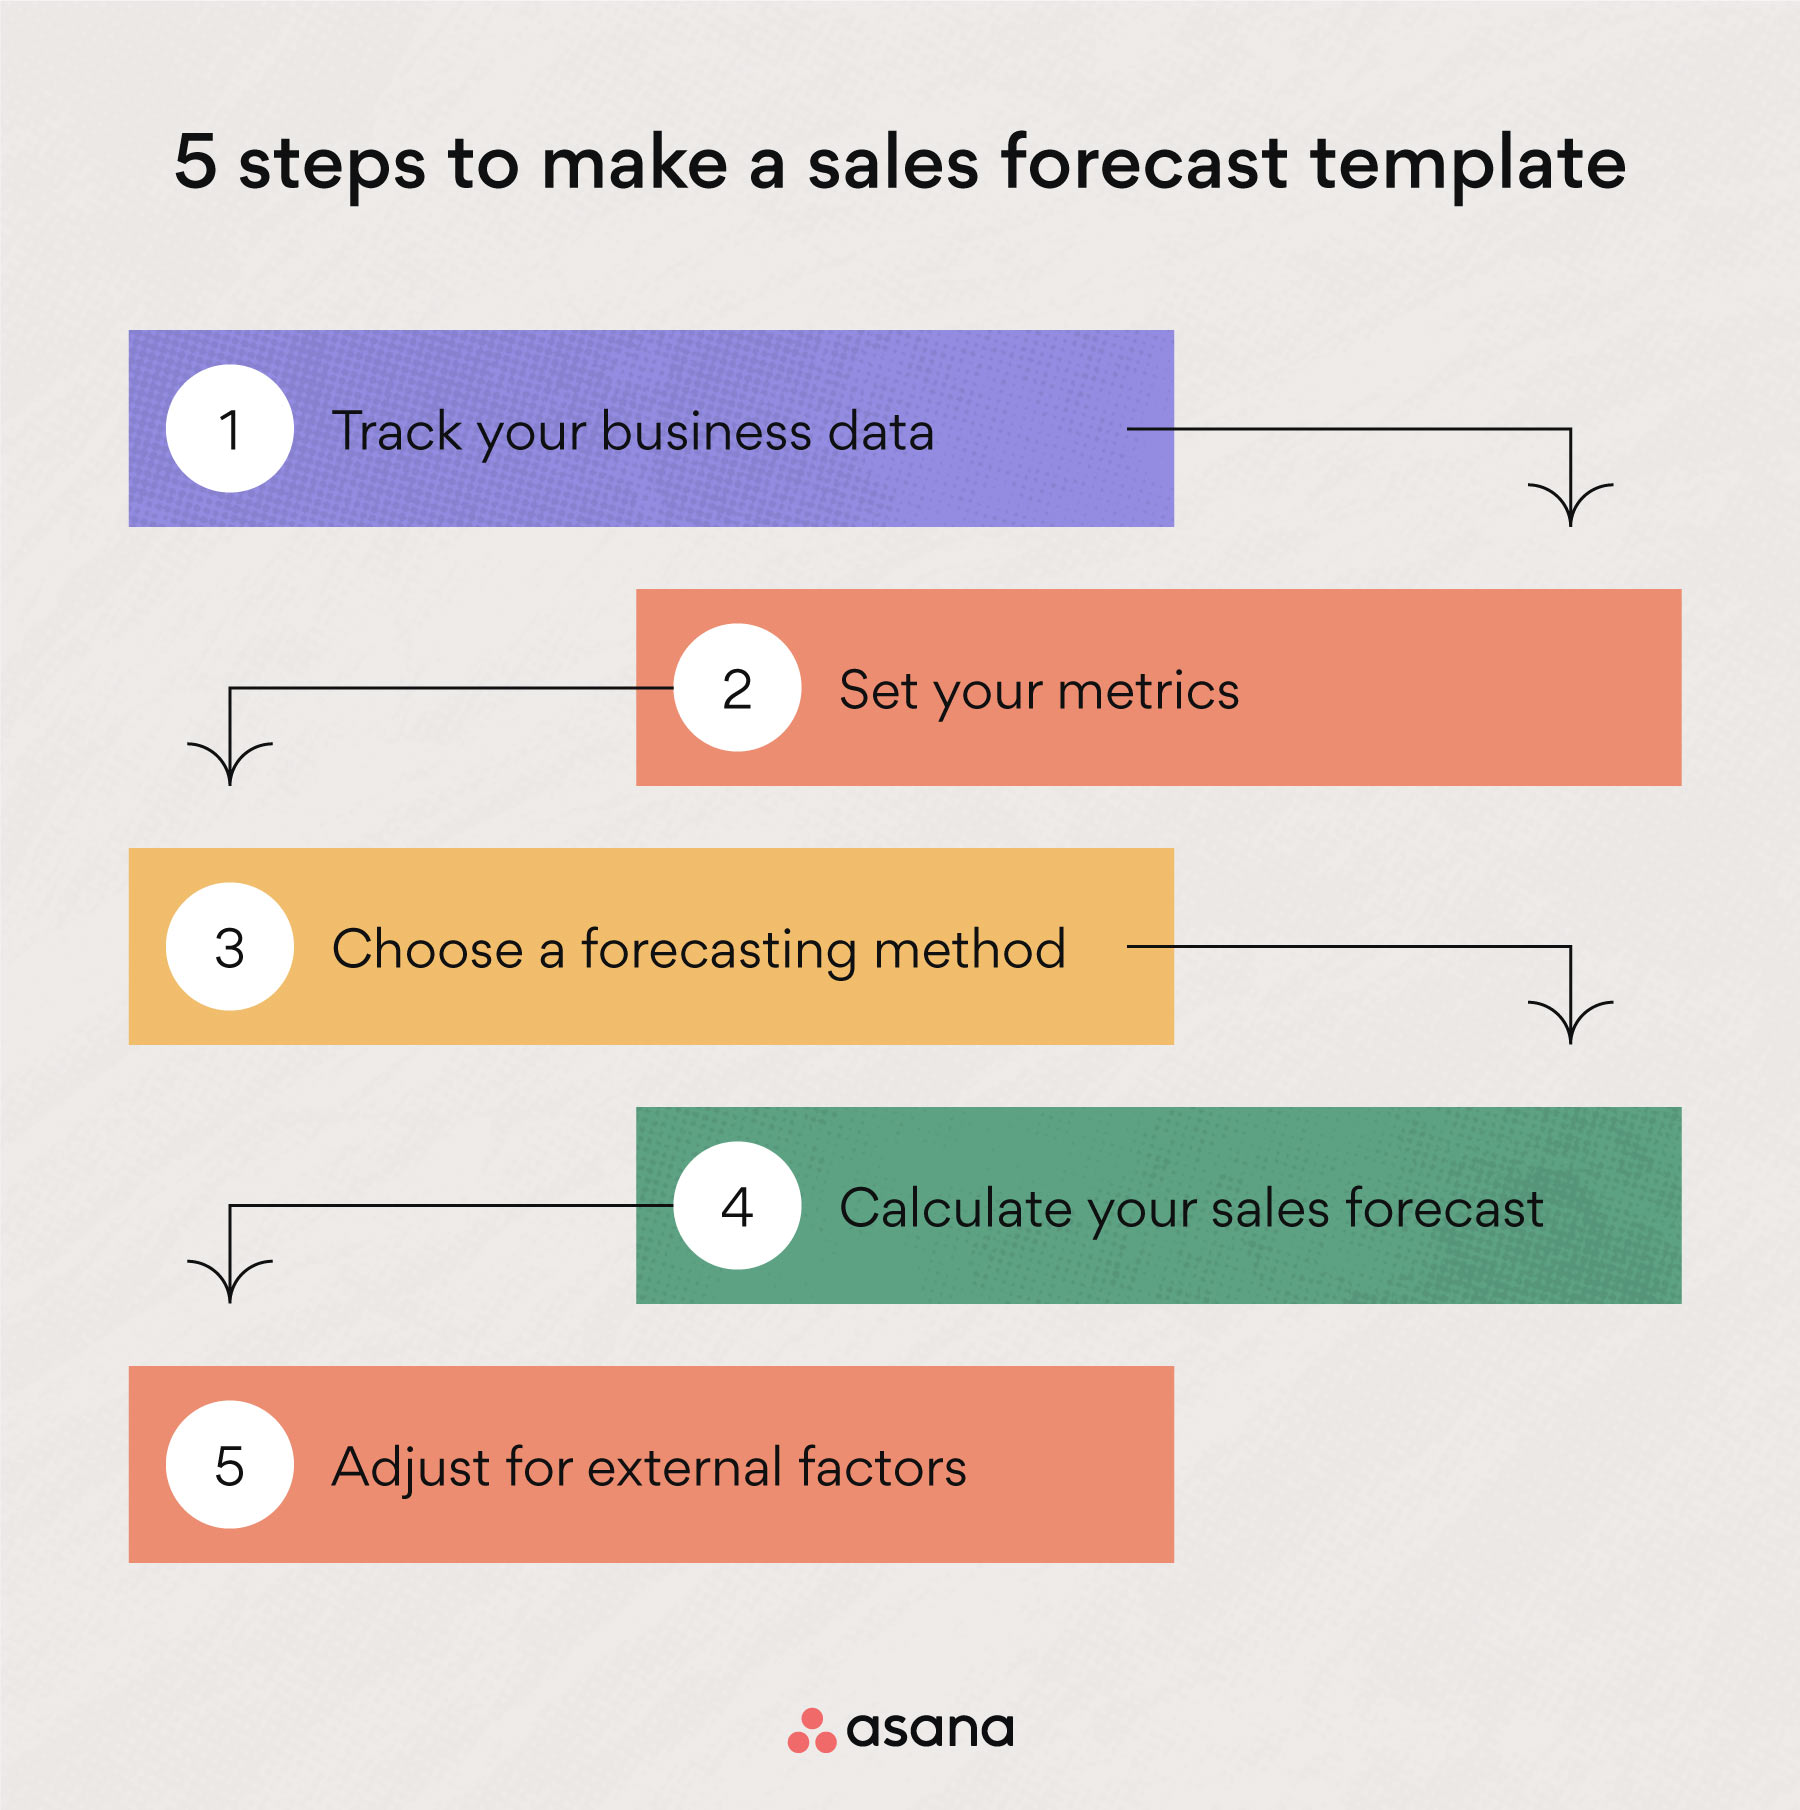 5 つのステップで販売予測を立てる方法